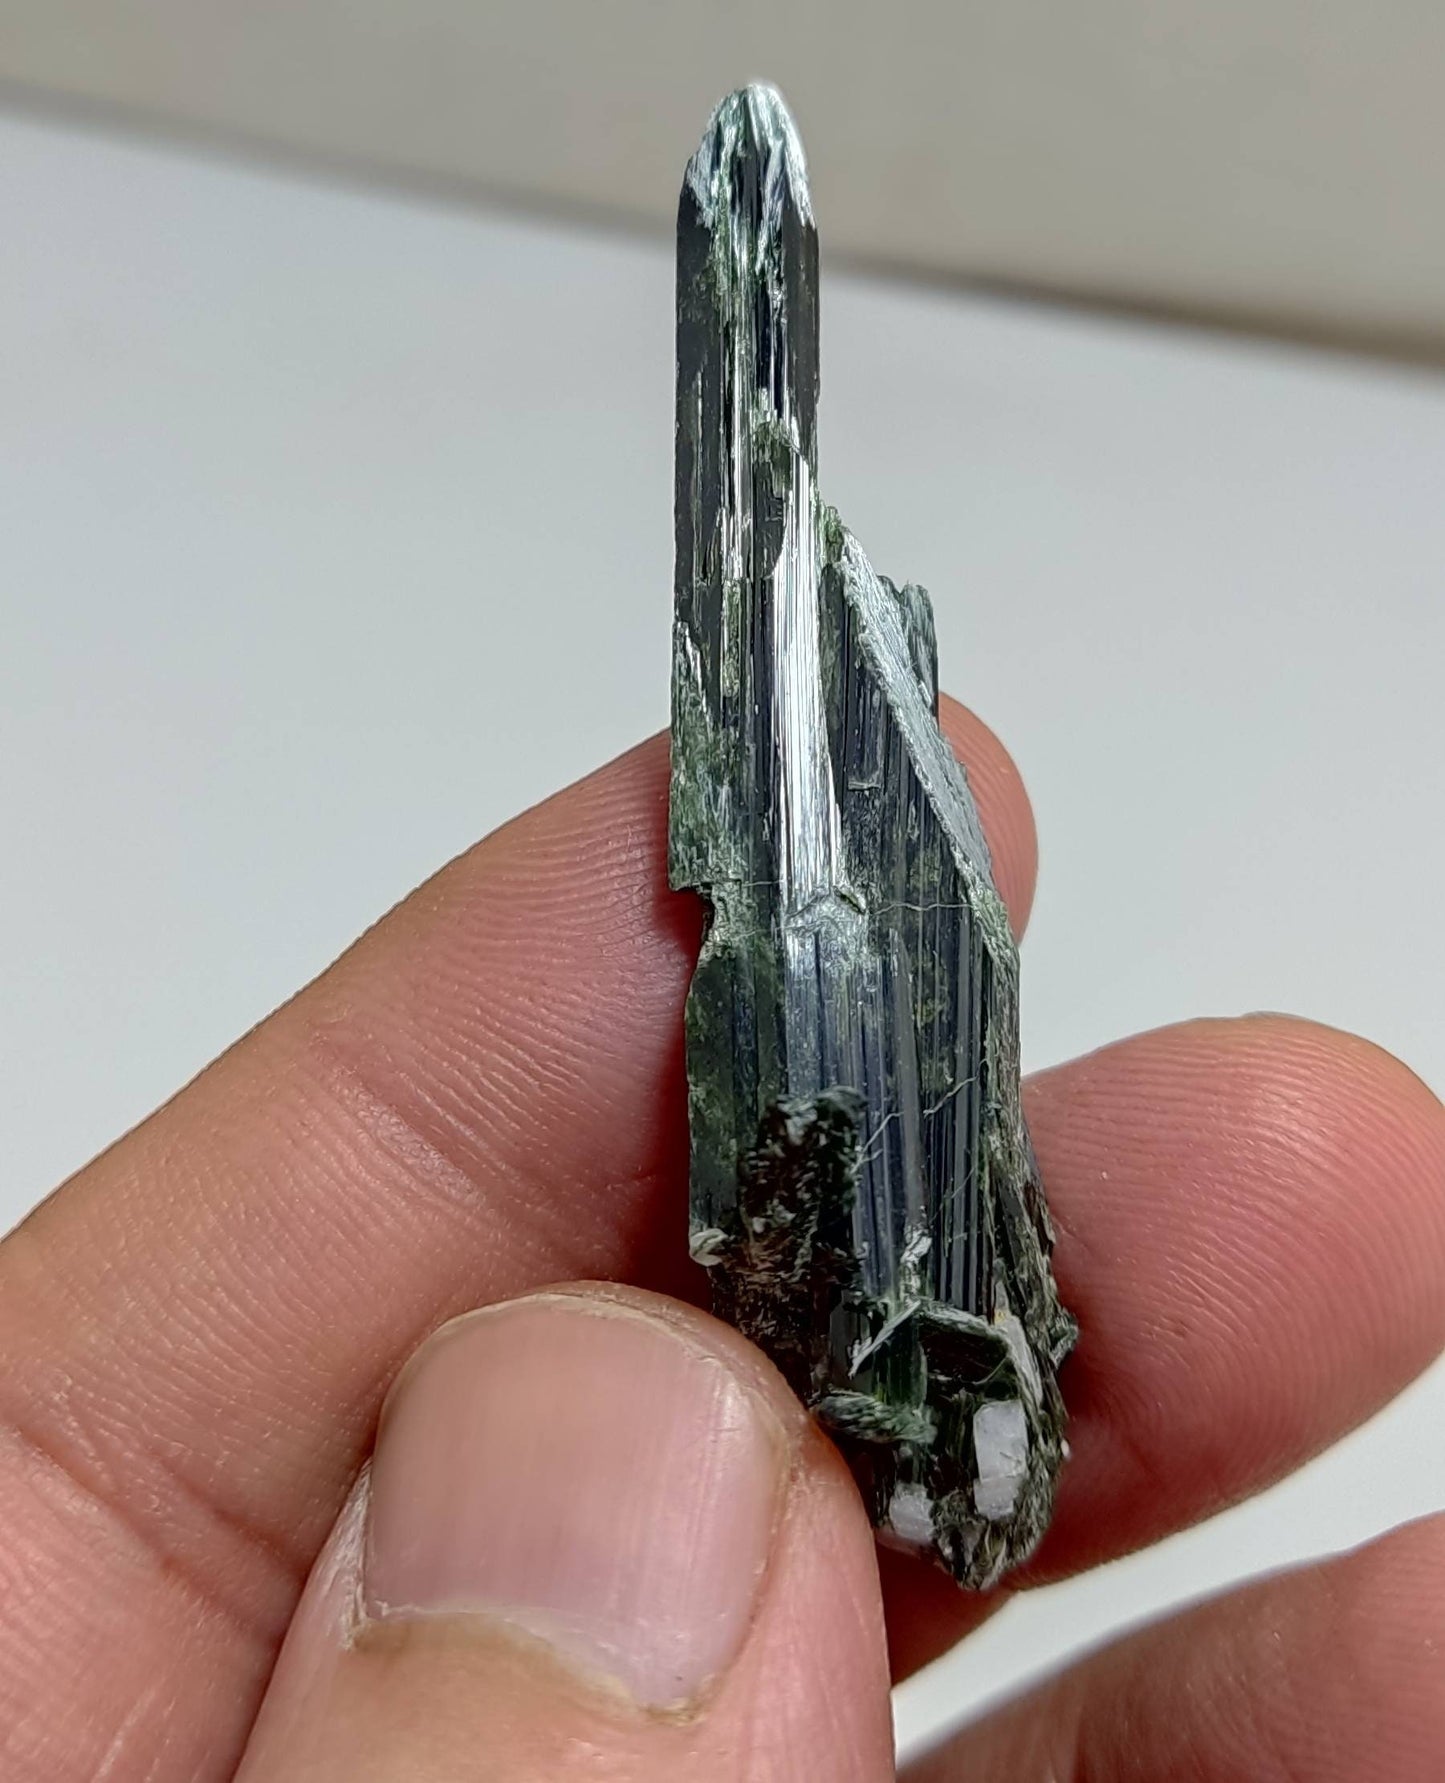 Single beautiful aesthetic aegirine crystals cluster specimen 8 grams